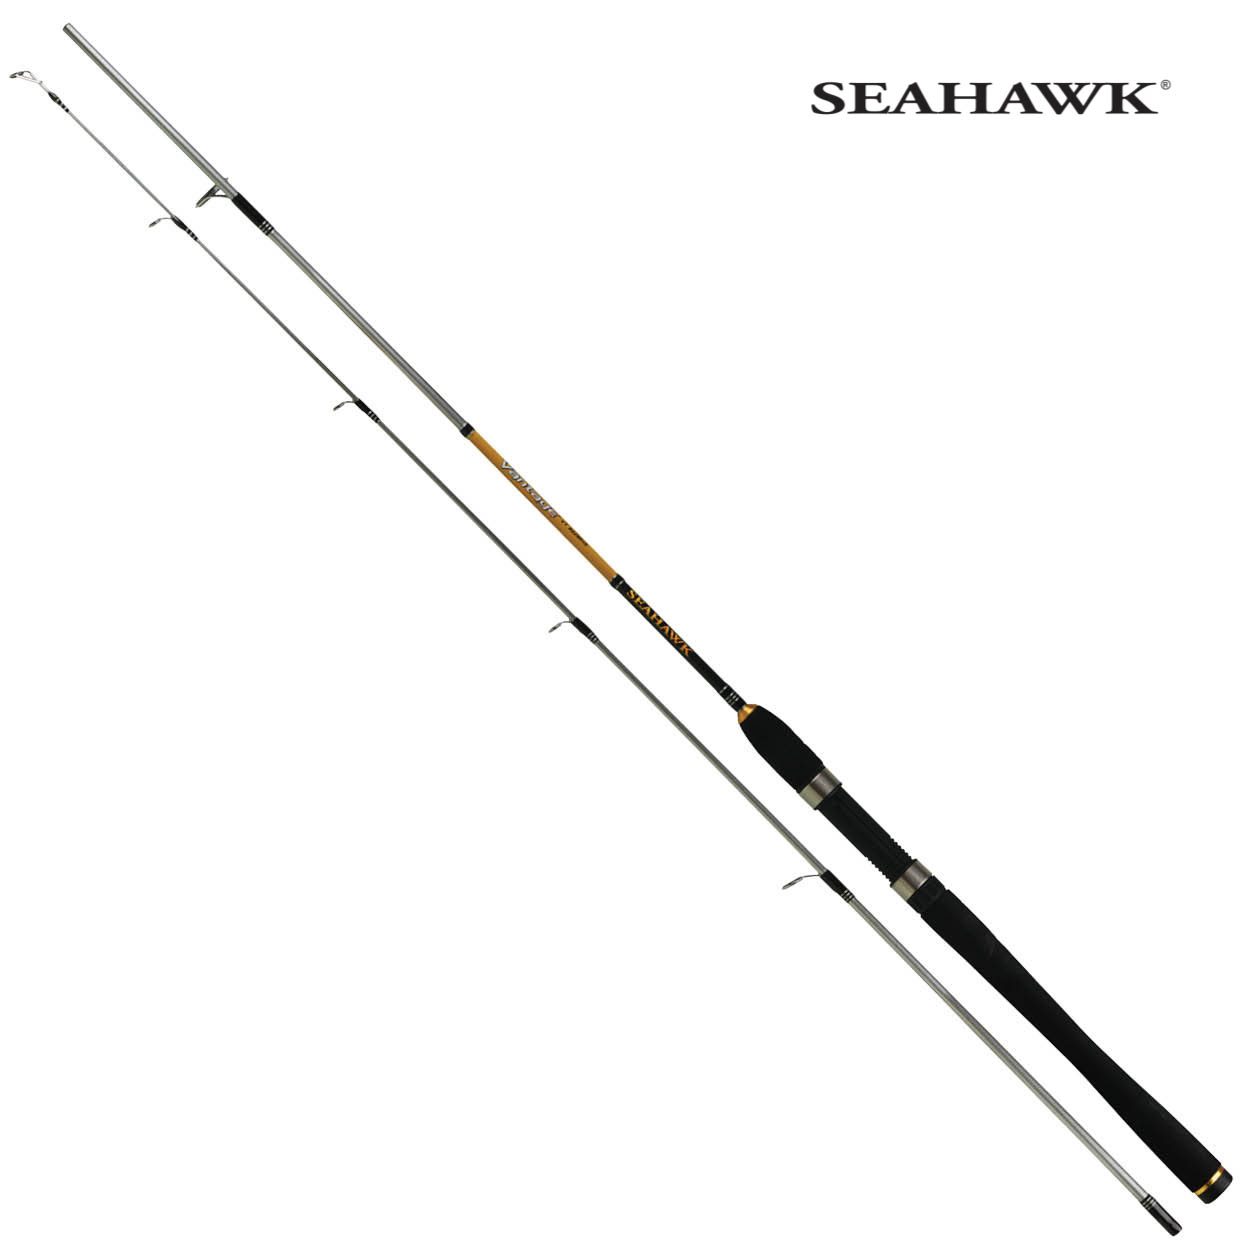 SEAHAWK ROD ((𝐋𝐈𝐀𝐓 ❗❗)) 𝐏𝐑𝐄𝐌𝐈𝐔𝐌 Seahawk Vantage Spinning Rod ((  𝐇𝐈𝐆𝐇 𝐂𝐀𝐑𝐁𝐎𝐍 ))